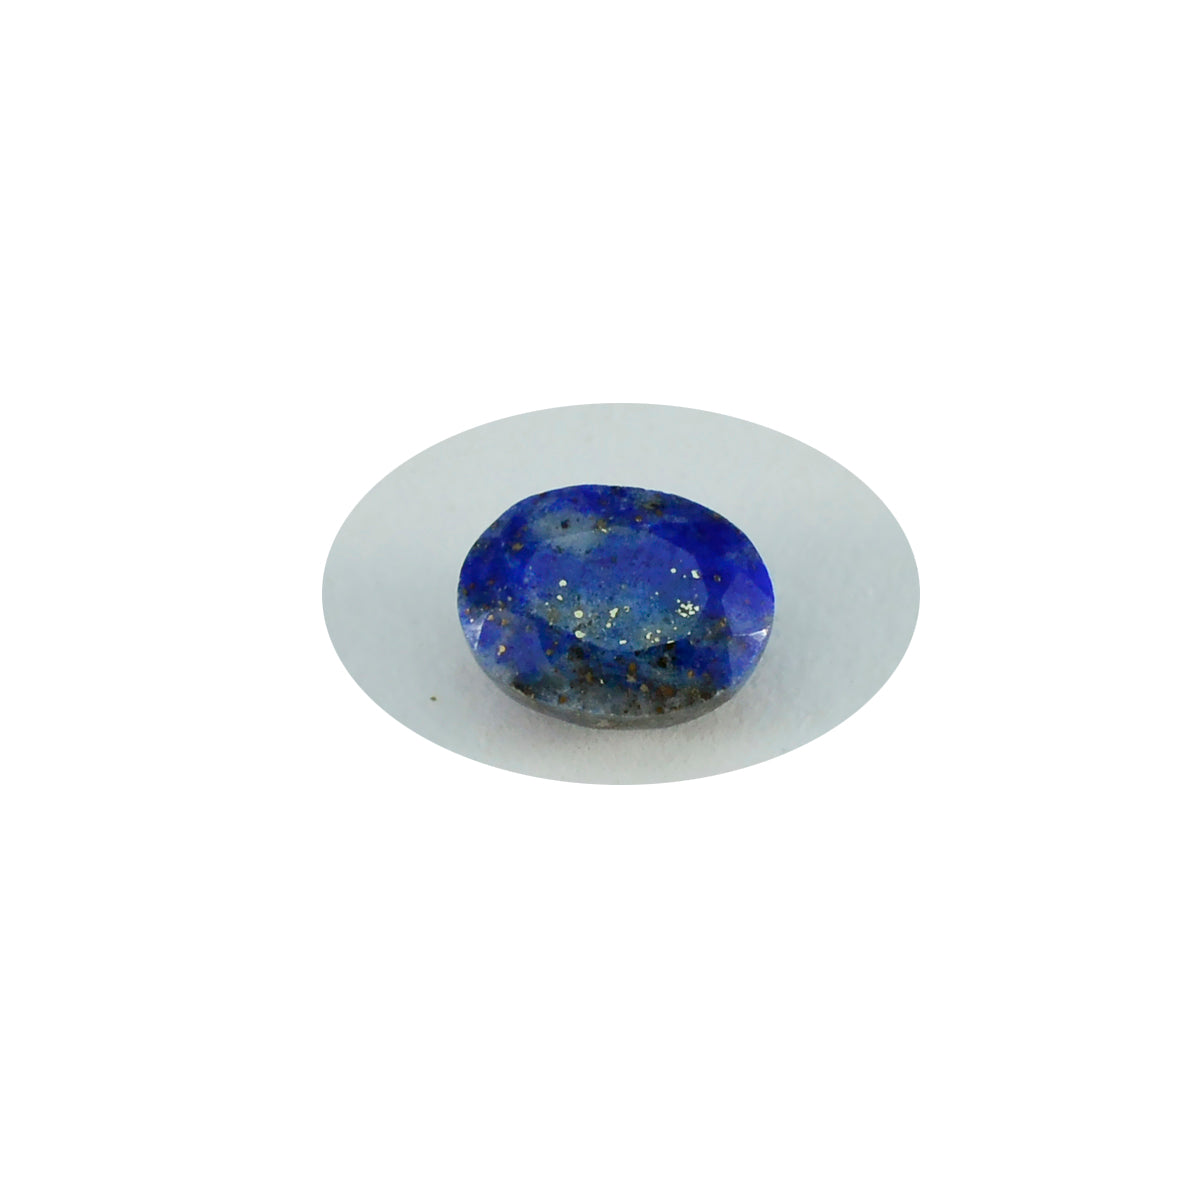 riyogems 1 шт. настоящий синий лазурит ограненный 3x5 мм овальной формы привлекательное качество свободный драгоценный камень